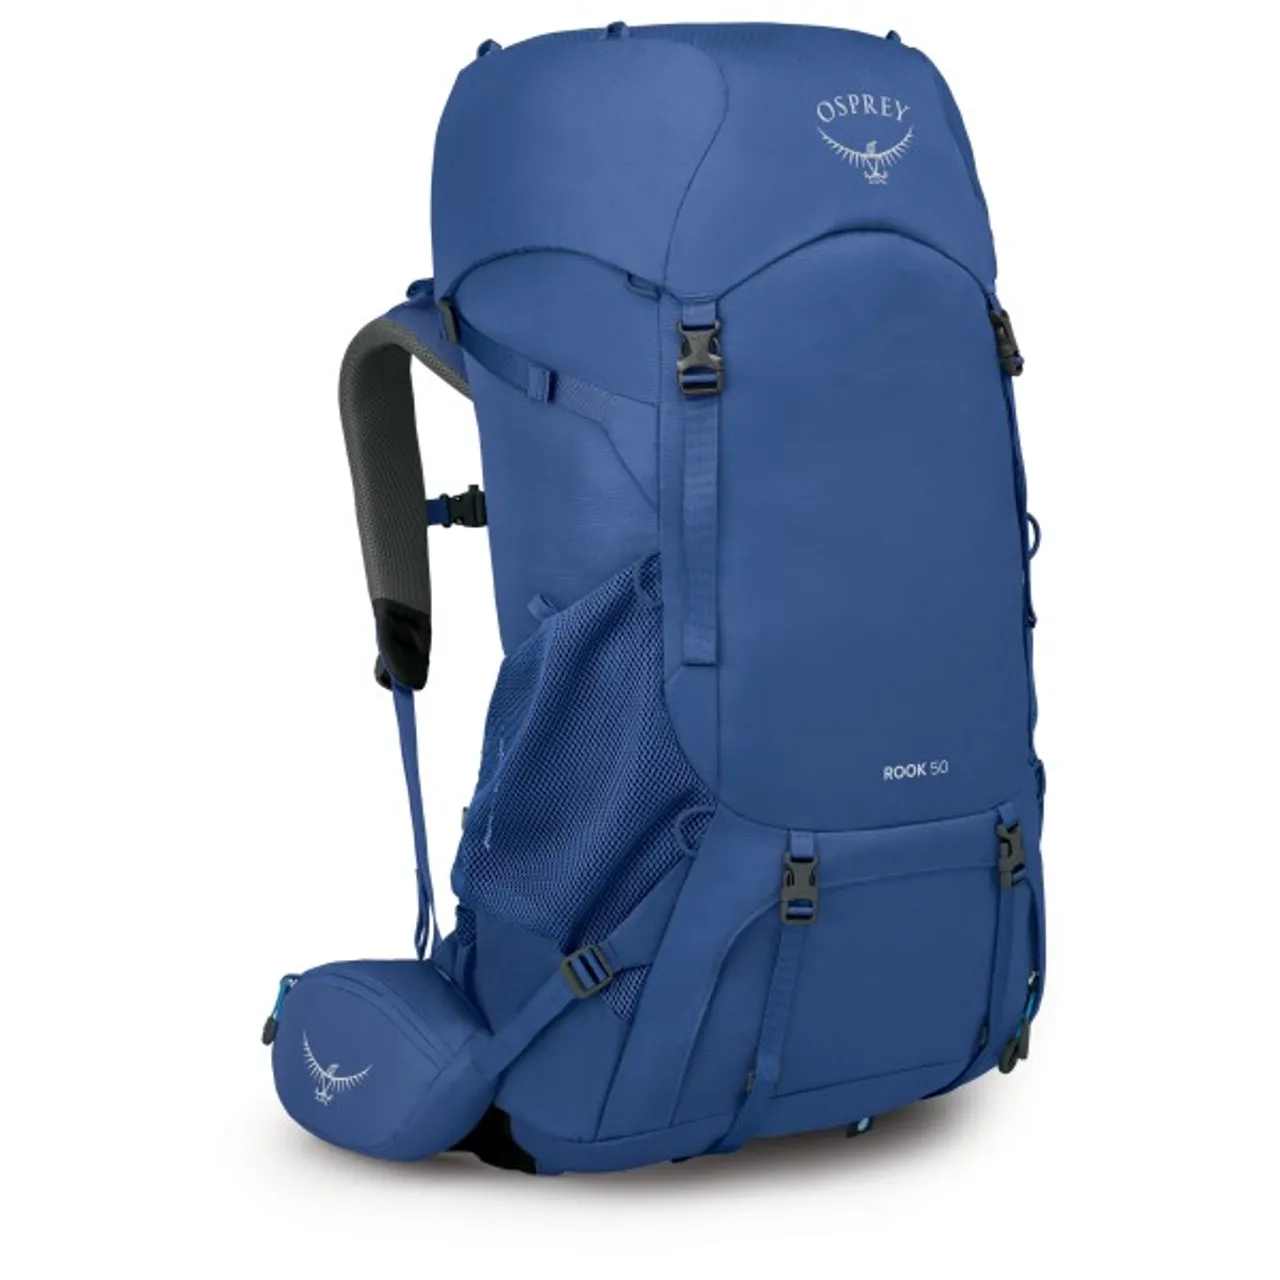 Osprey - Rook 50 - Walking backpack size 50 l, blue